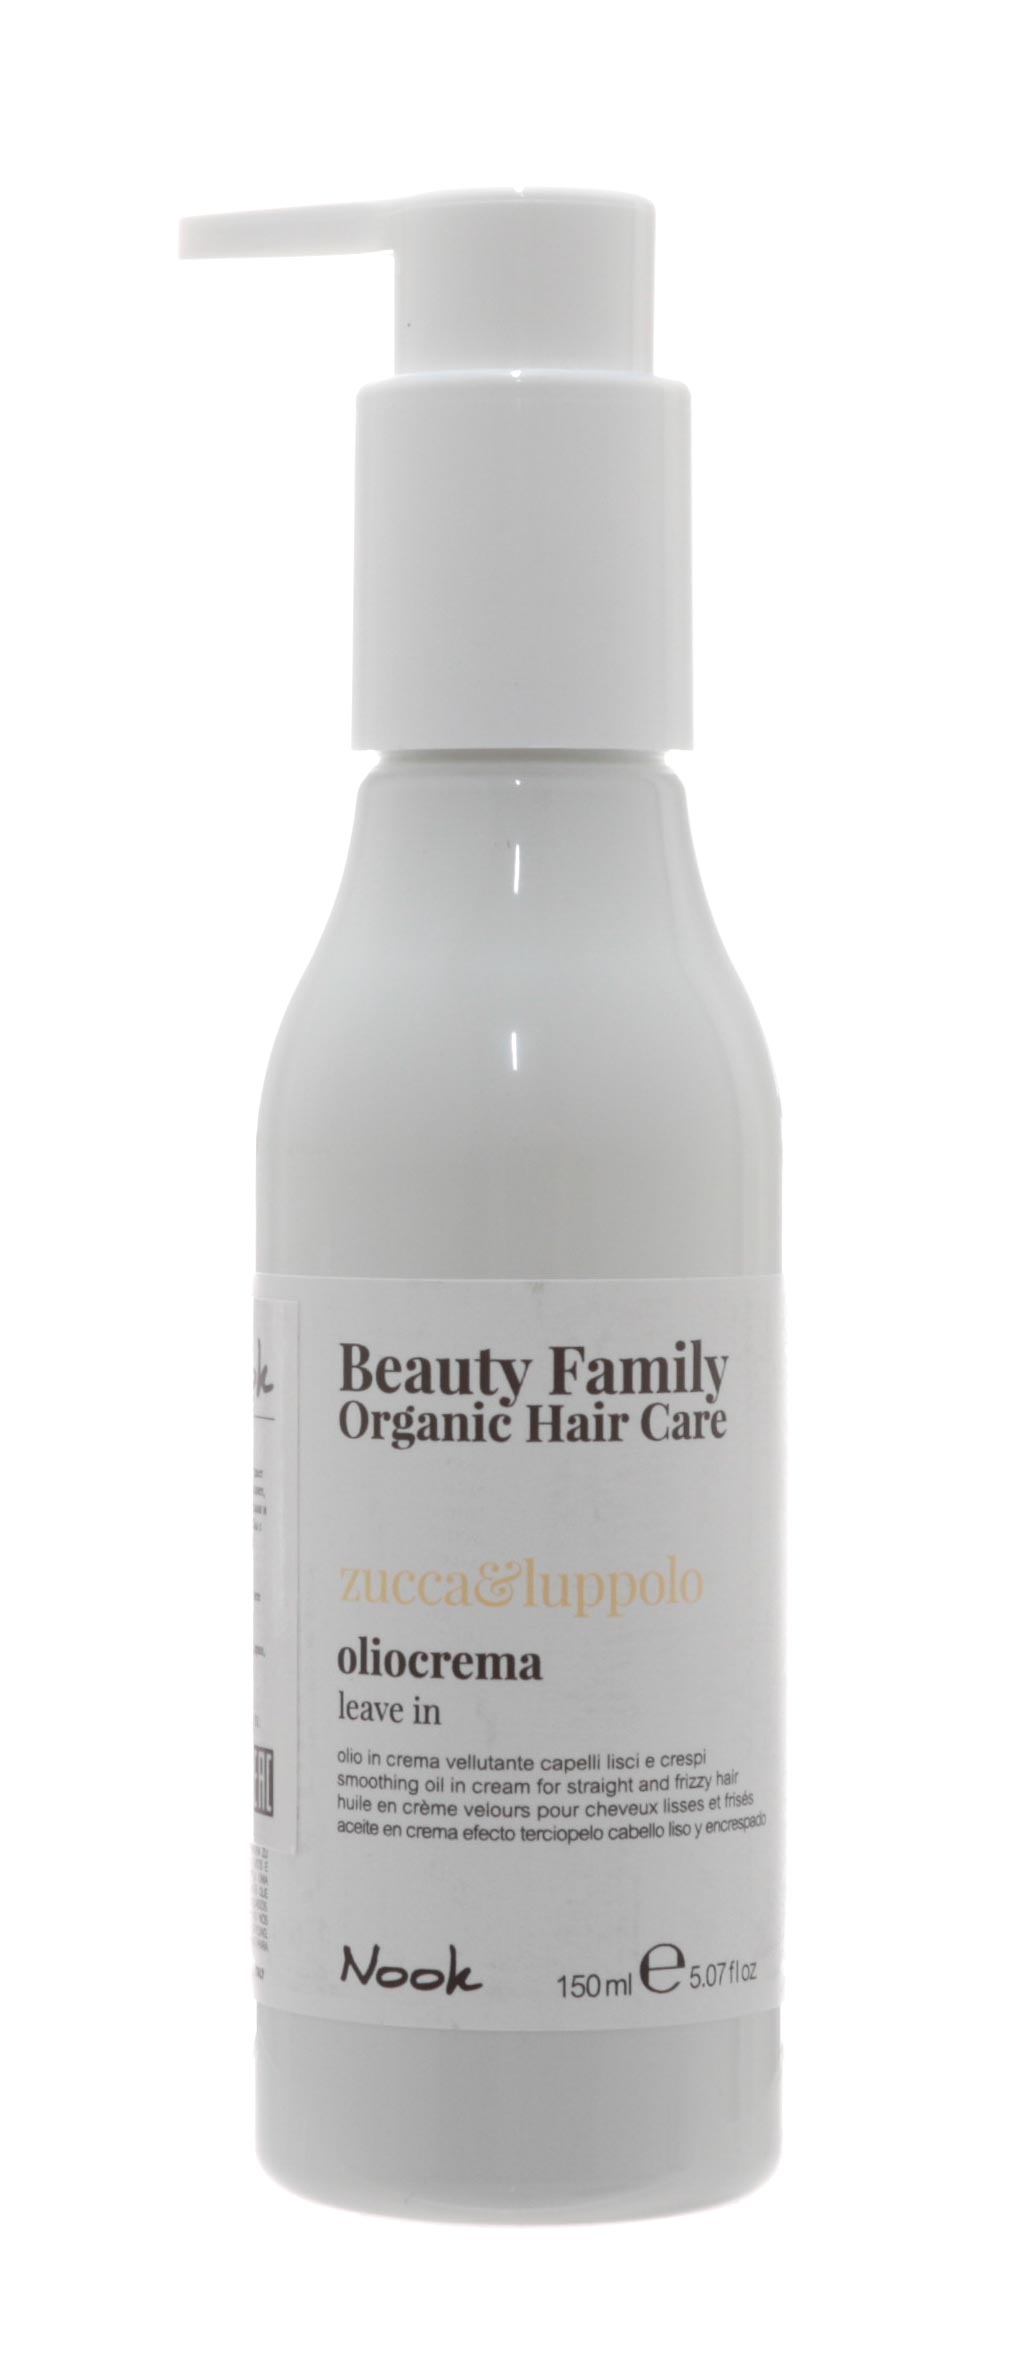 Nook Крем-масло для прямых и вьющихся волос Oliocrema Zucca&Luppolo, 150 мл (Nook, Beauty Family) от Socolor